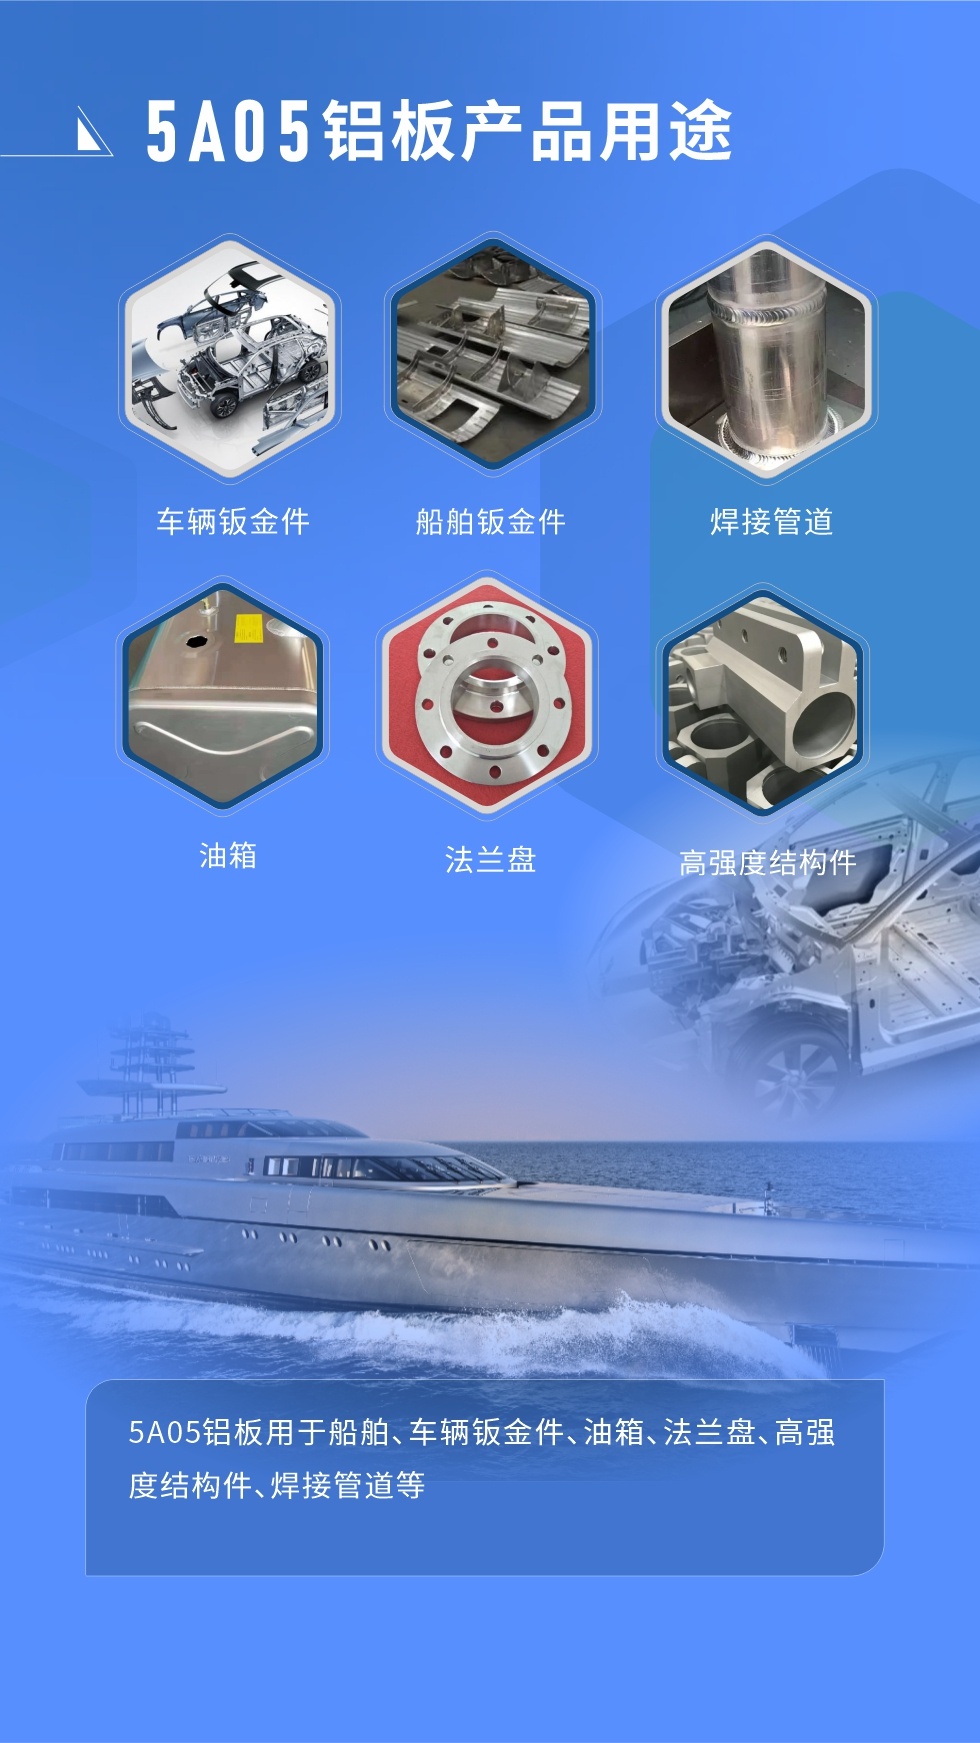  应用范围  

5A05铝板用于船舶、车辆钣金件、油箱、法兰盘、高强度结构件、焊接管道等
